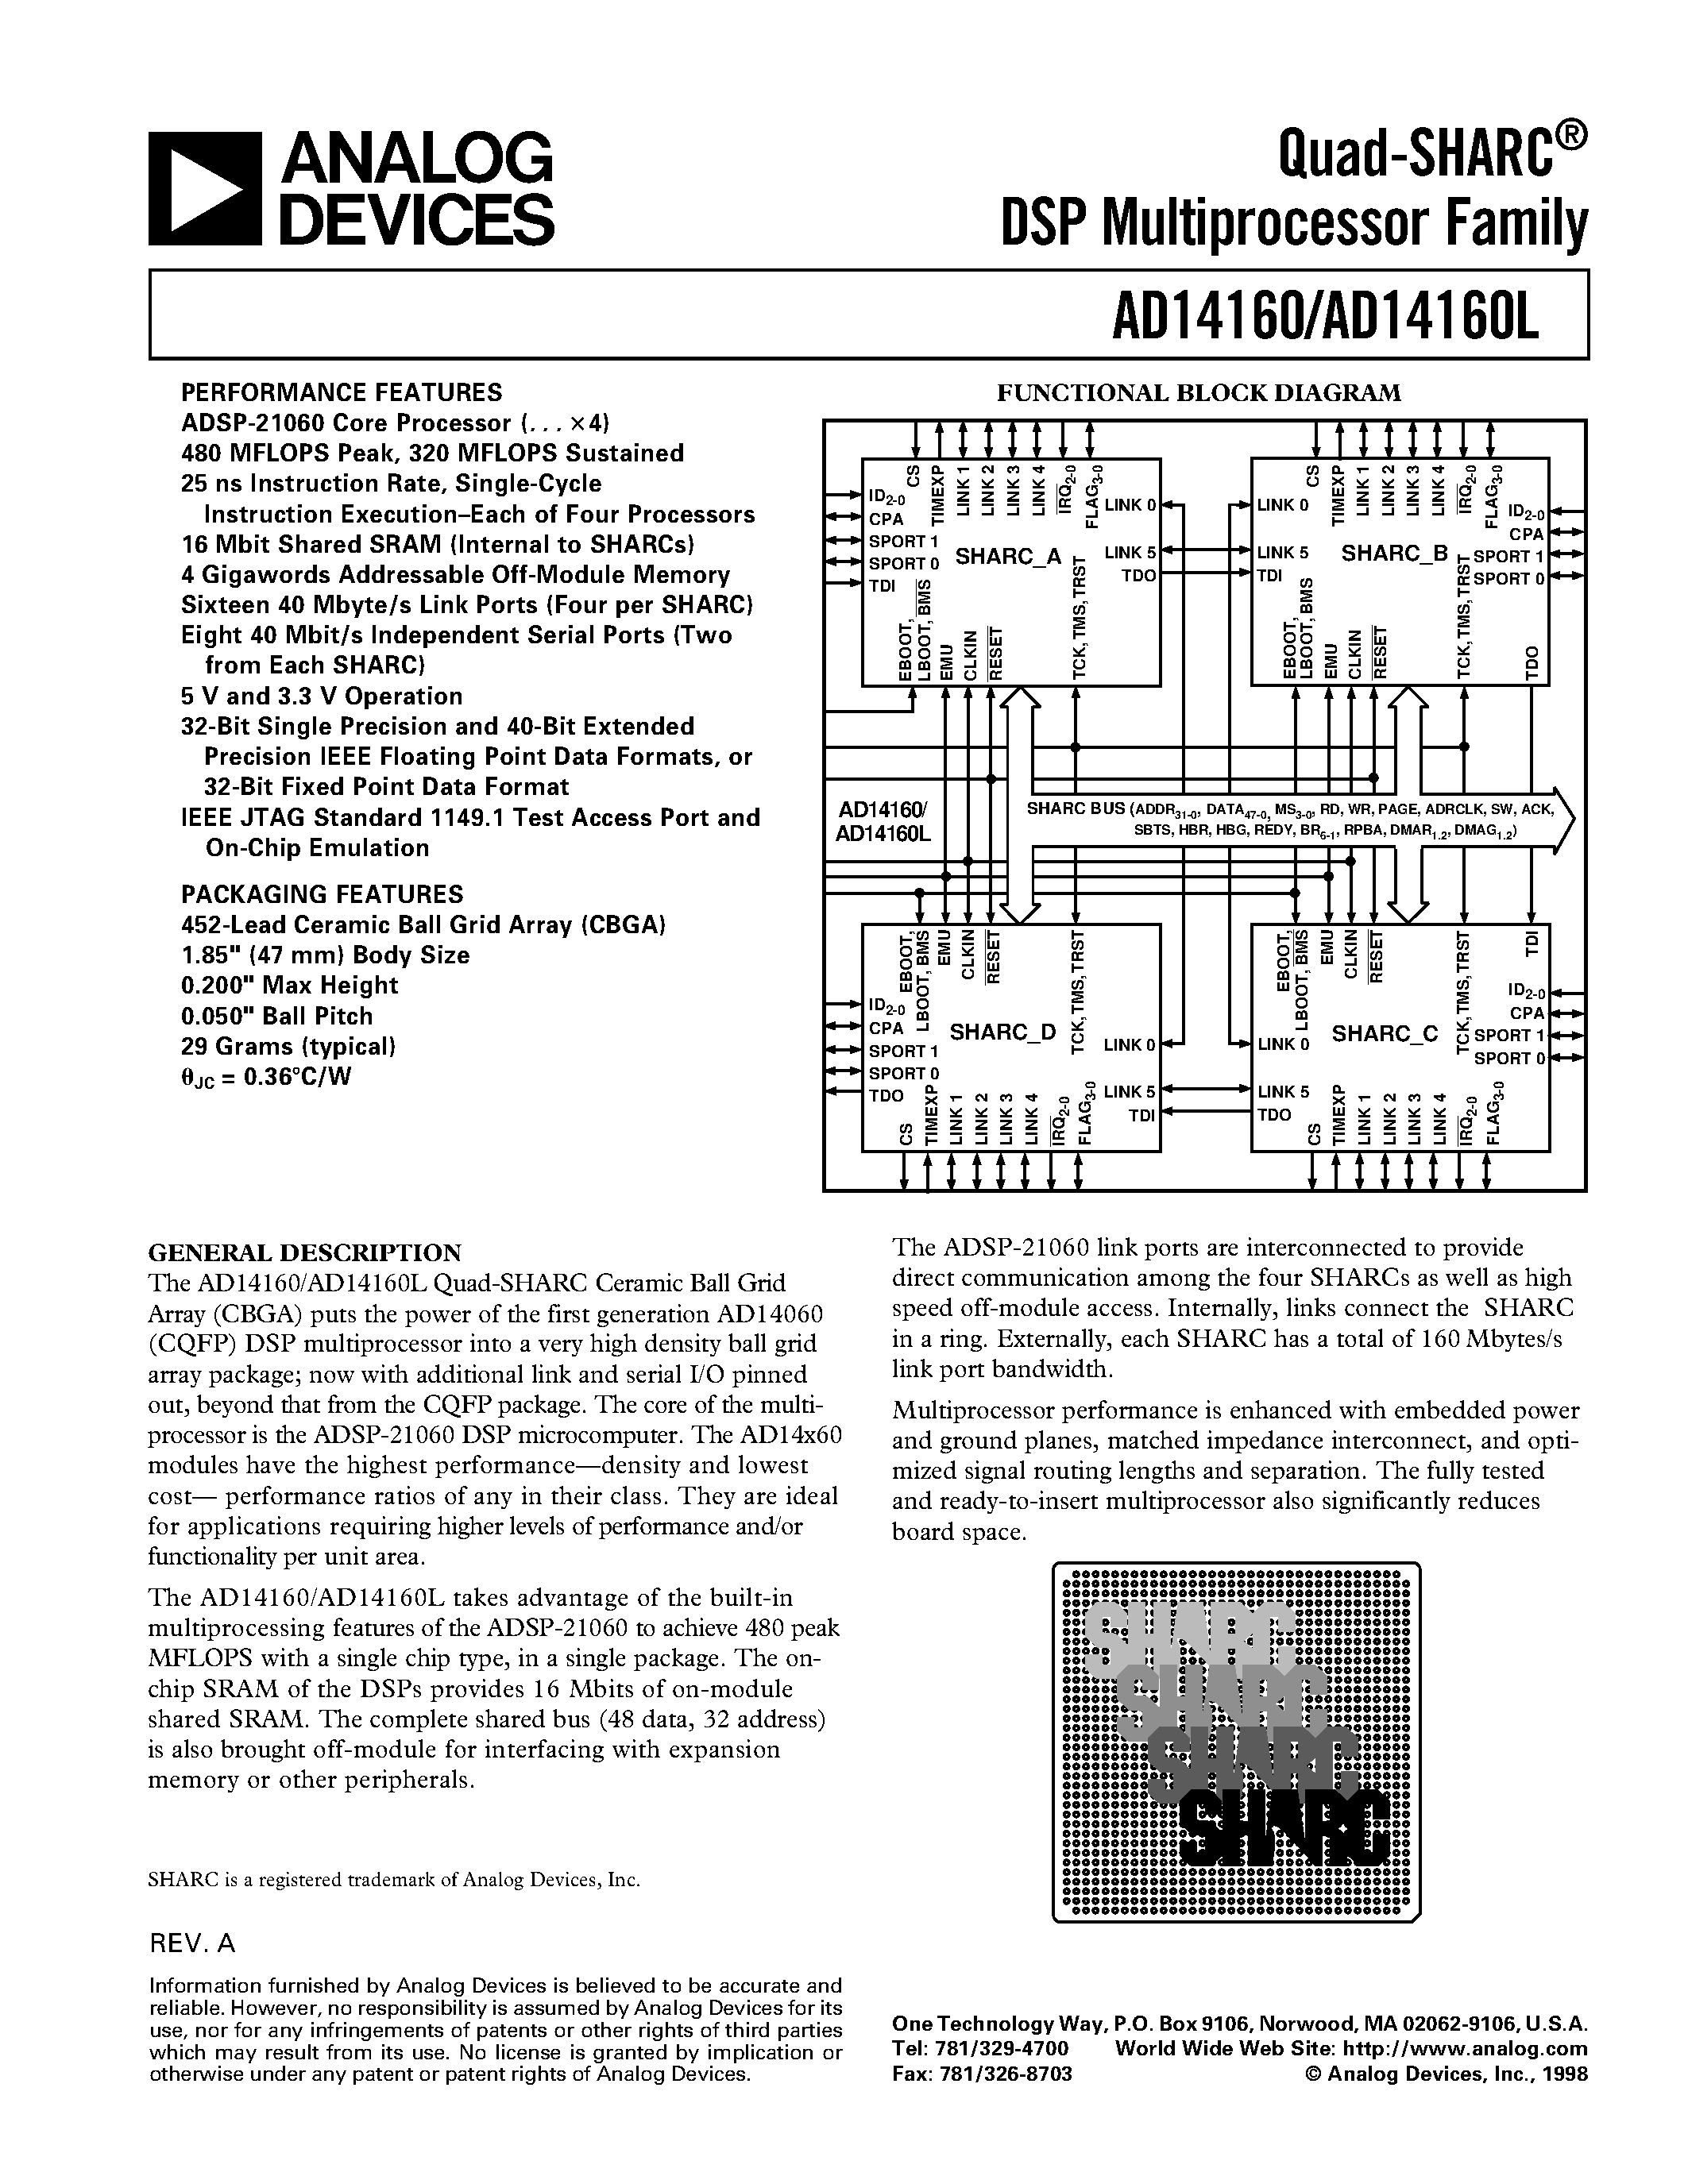 Даташит AD14160L - Quad-SHARC DSP Multiprocessor Family страница 1